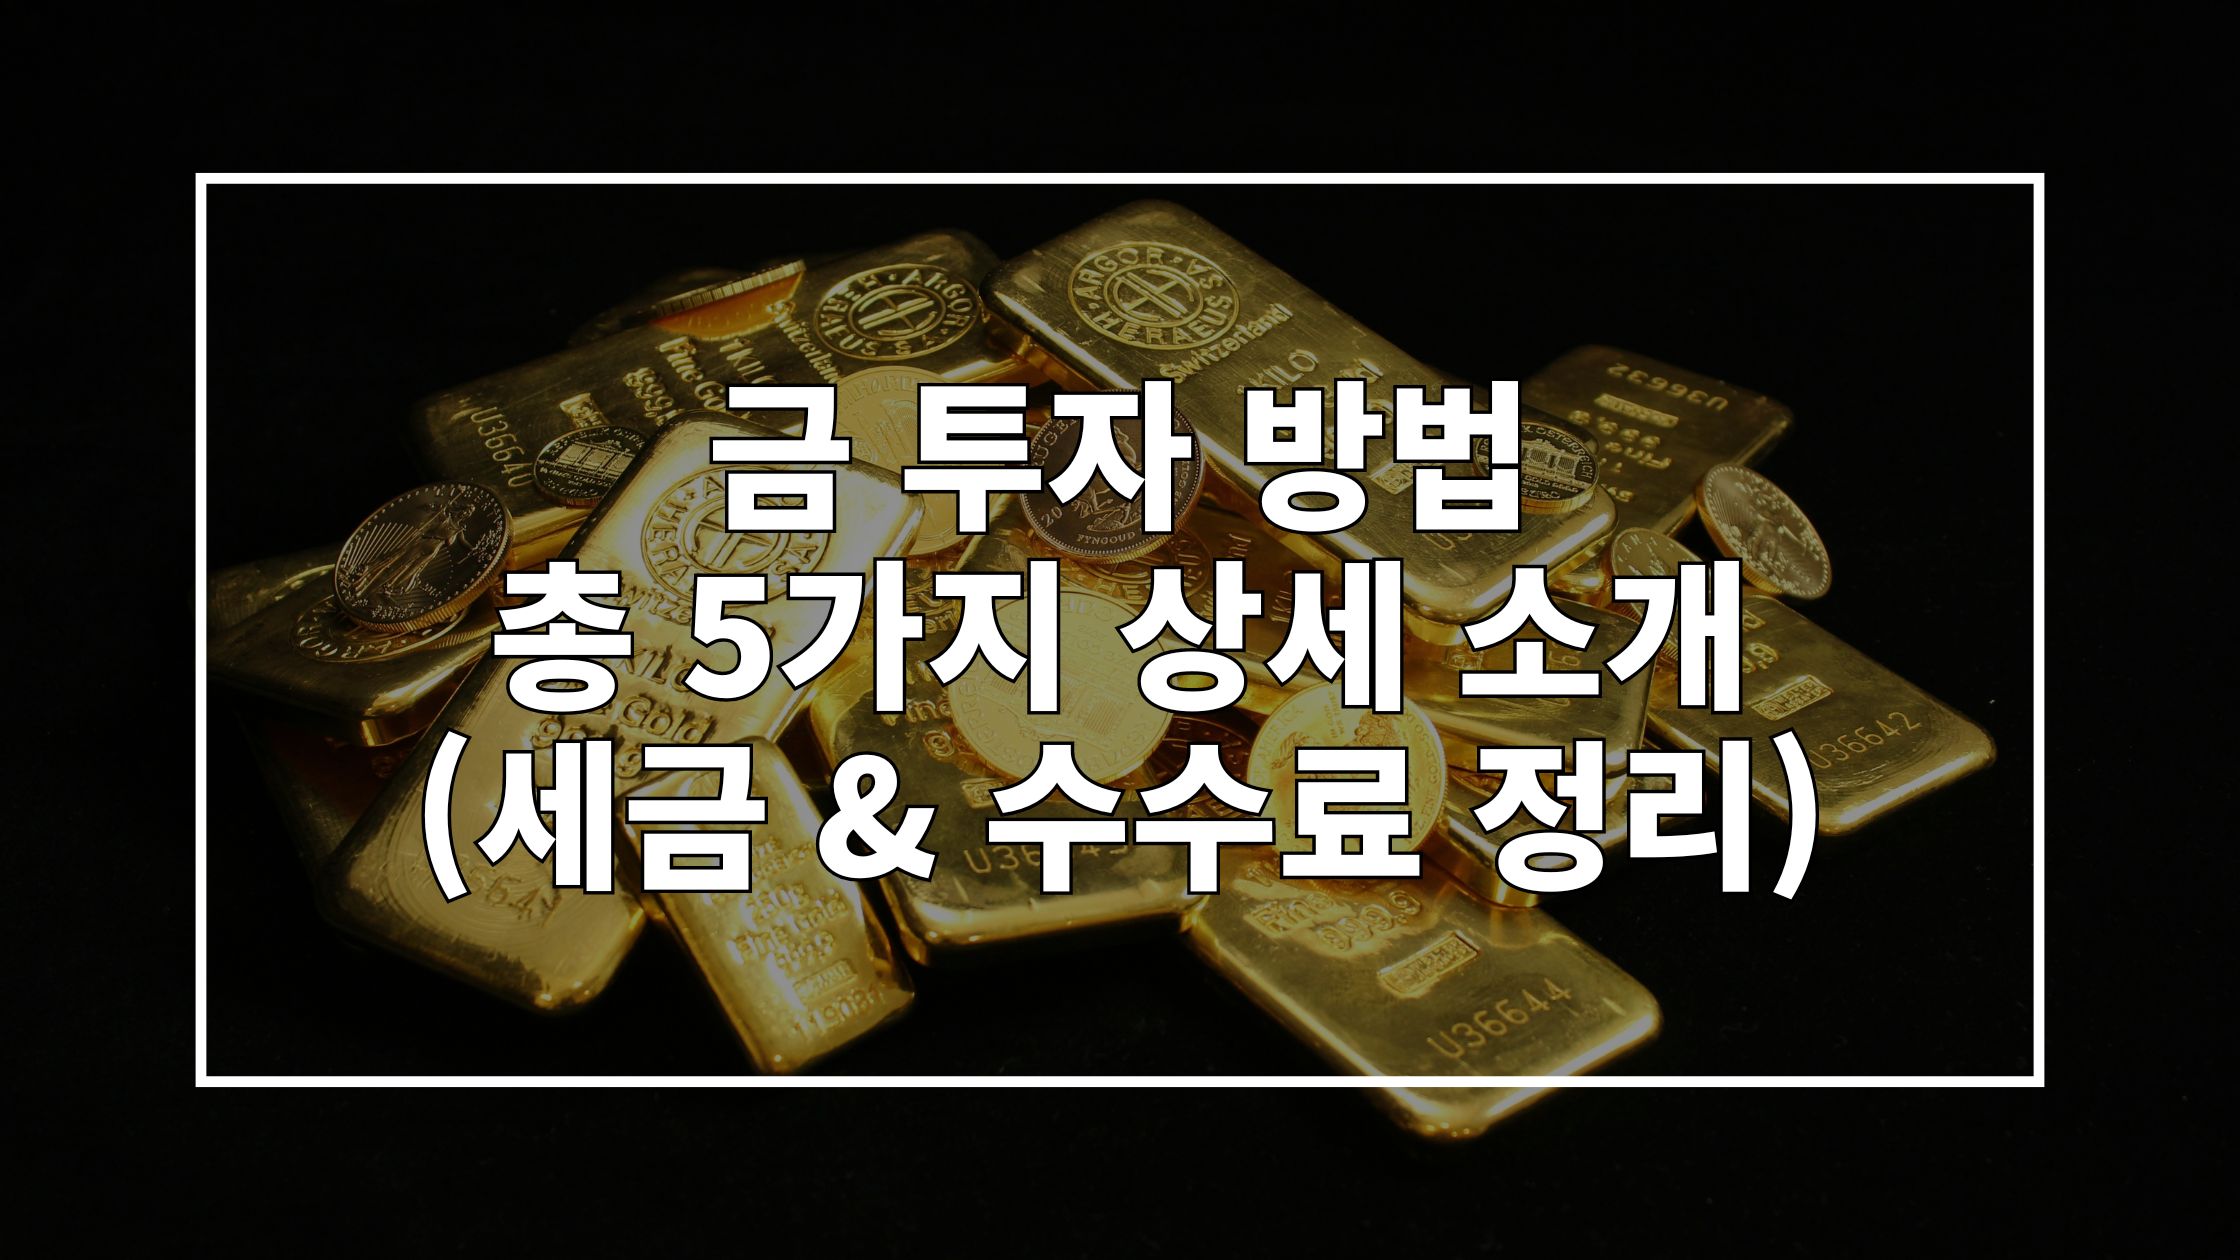 골드바가 쌓여있는 사진 위에 '금 투자 방법 총 5가지 상세 소개 (세금 & 수수료 정리)'라고 쓰인 썸네일 이미지입니다.